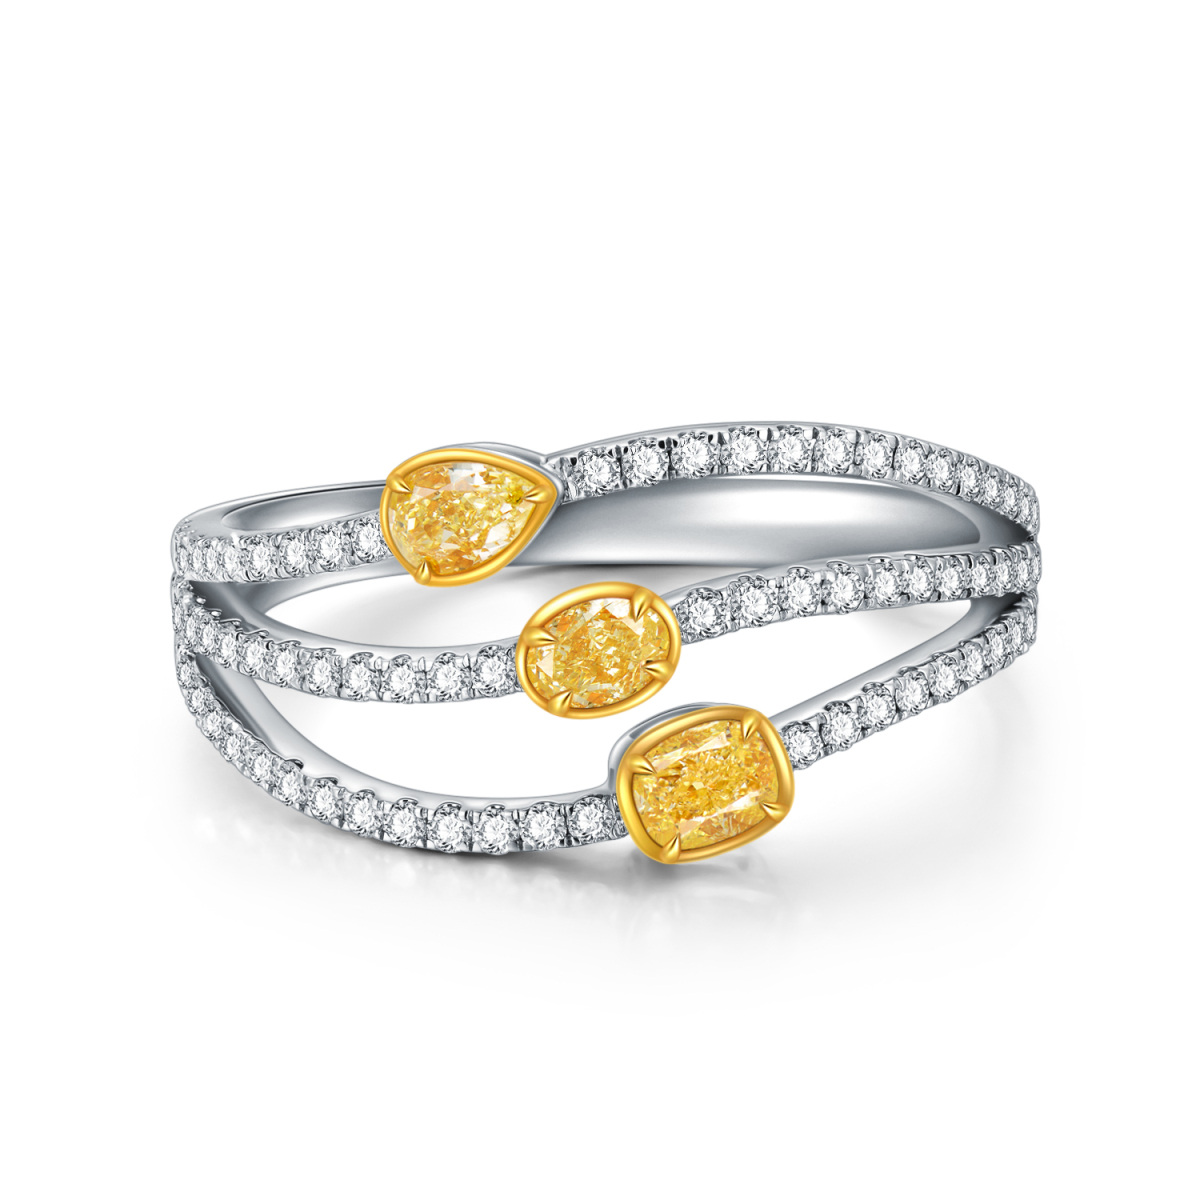 Bague coussin halo en or blanc 18 carats avec couches de diamants jaunes, idéale pour les femmes-1